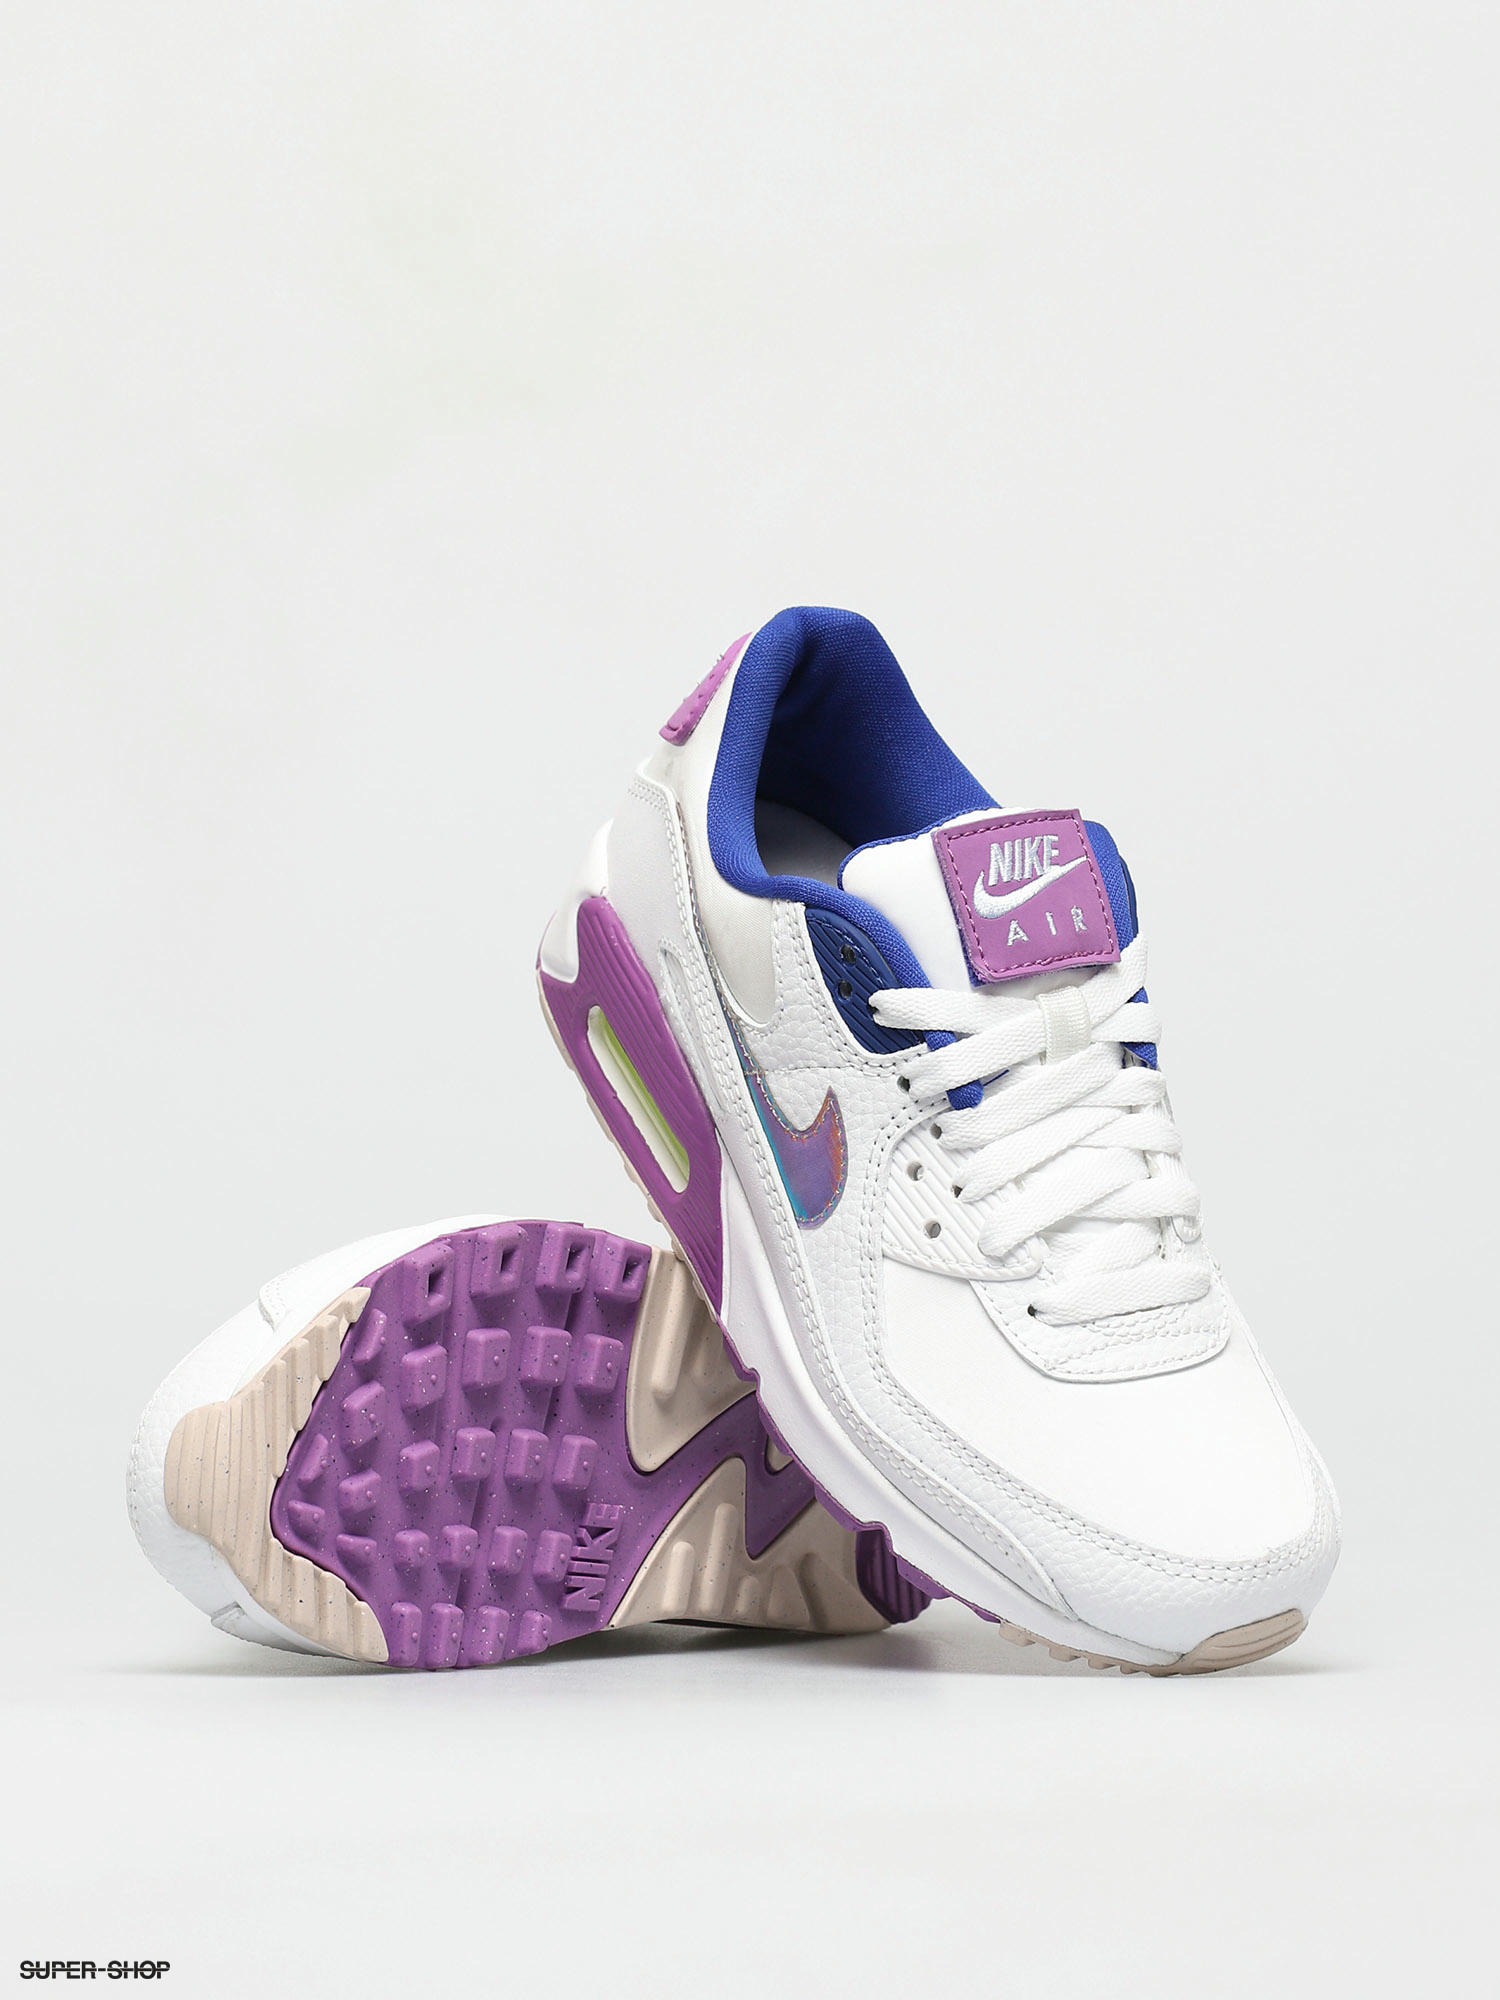 nike shoes color purple